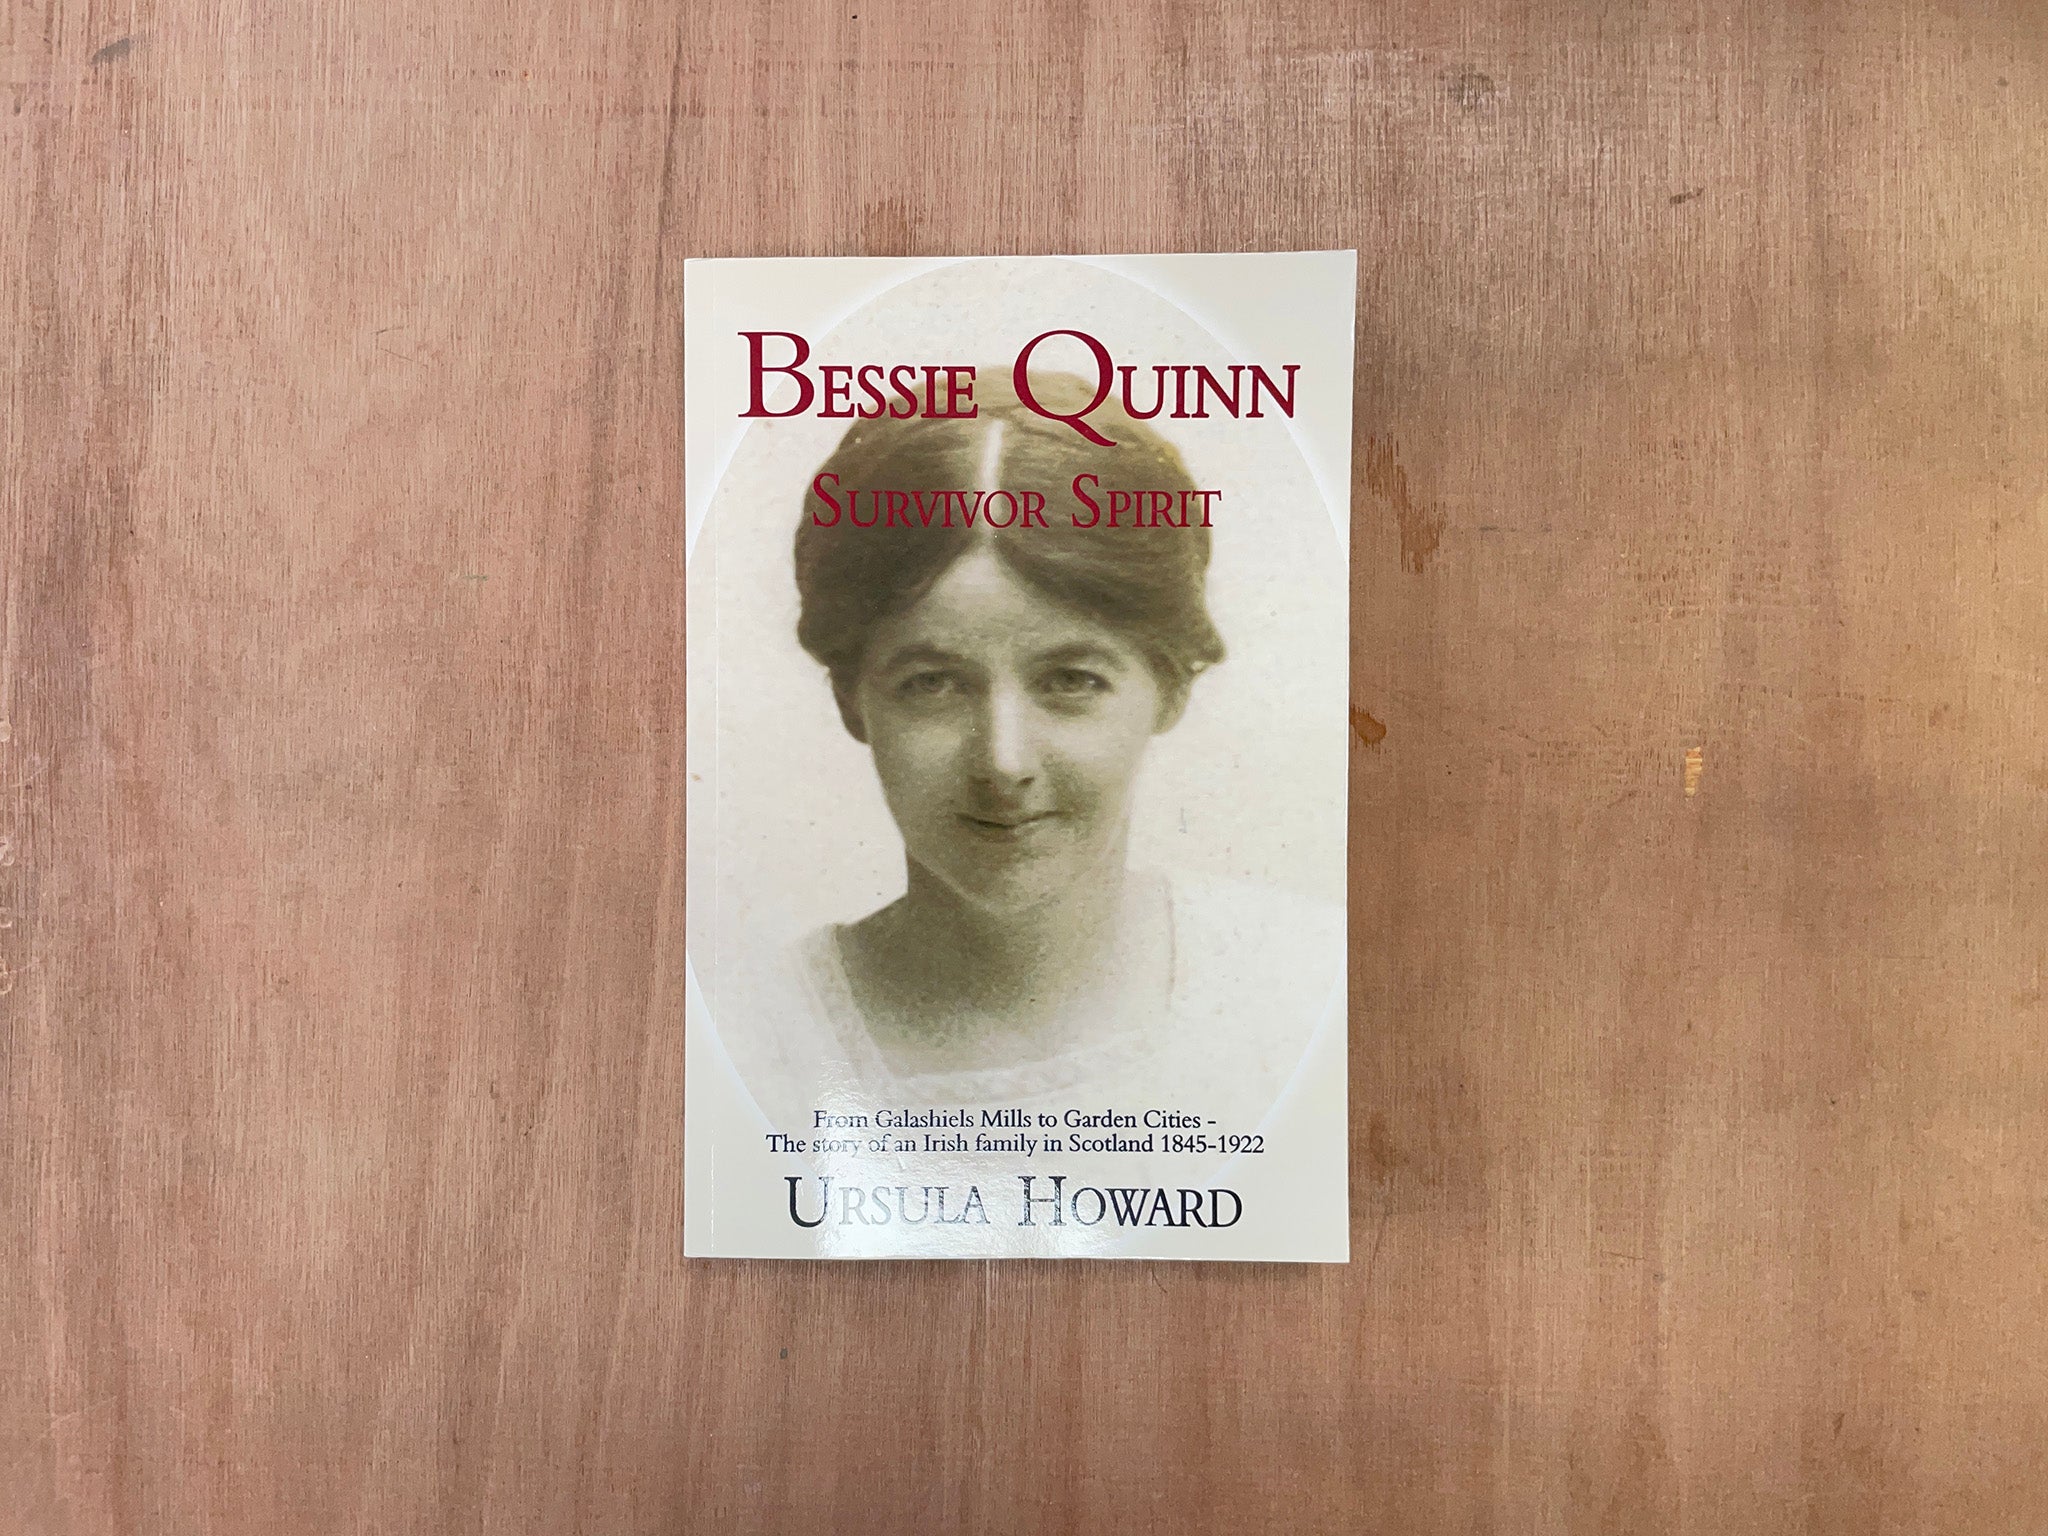 BESSIE QUINN: SURVIVOR SPIRIT - FROM GALASHIELS MILLS TO GARDEN CITIES by Ursula Howard